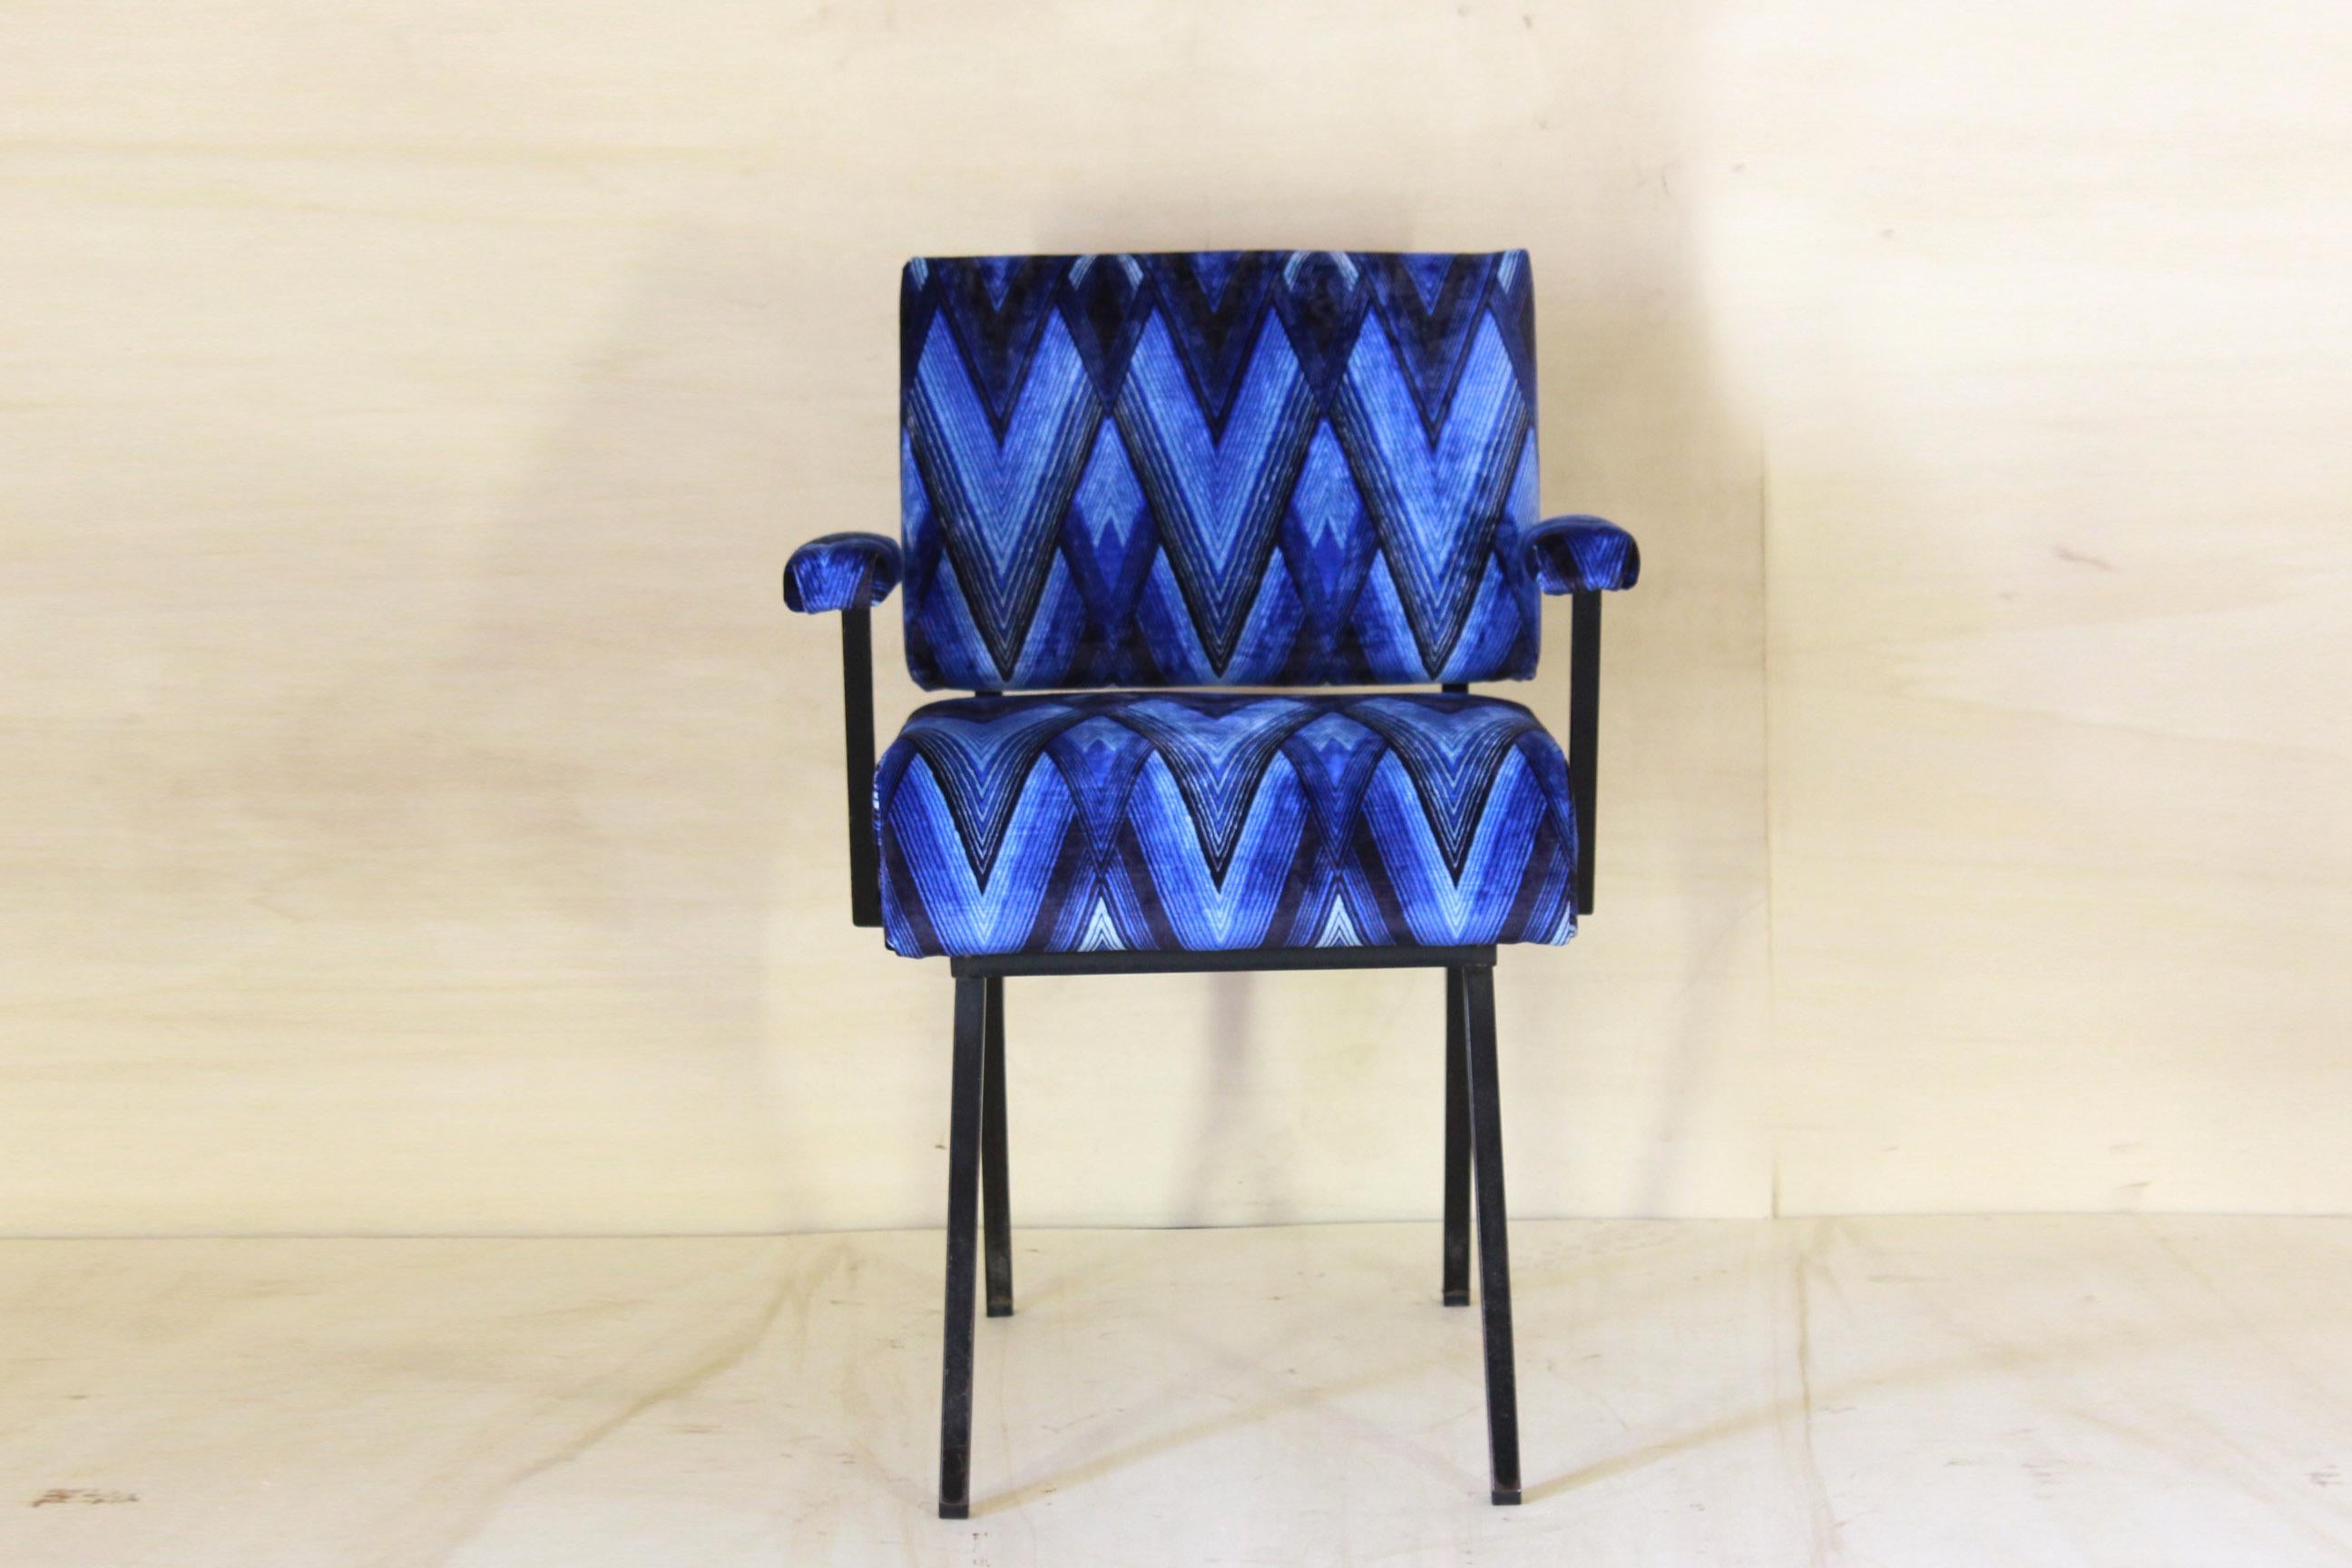 Vintage Sessel, Satz von zwei, Italien 1960er.
Zwei Vintage-Sessel aus der Mitte des Jahrhunderts mit mehrfarbiger Textur und minimaler Eisenstruktur. Originalbezug aus den 1960er Jahren, während die Füllung der Sitze und Rückenlehnen nagelneu